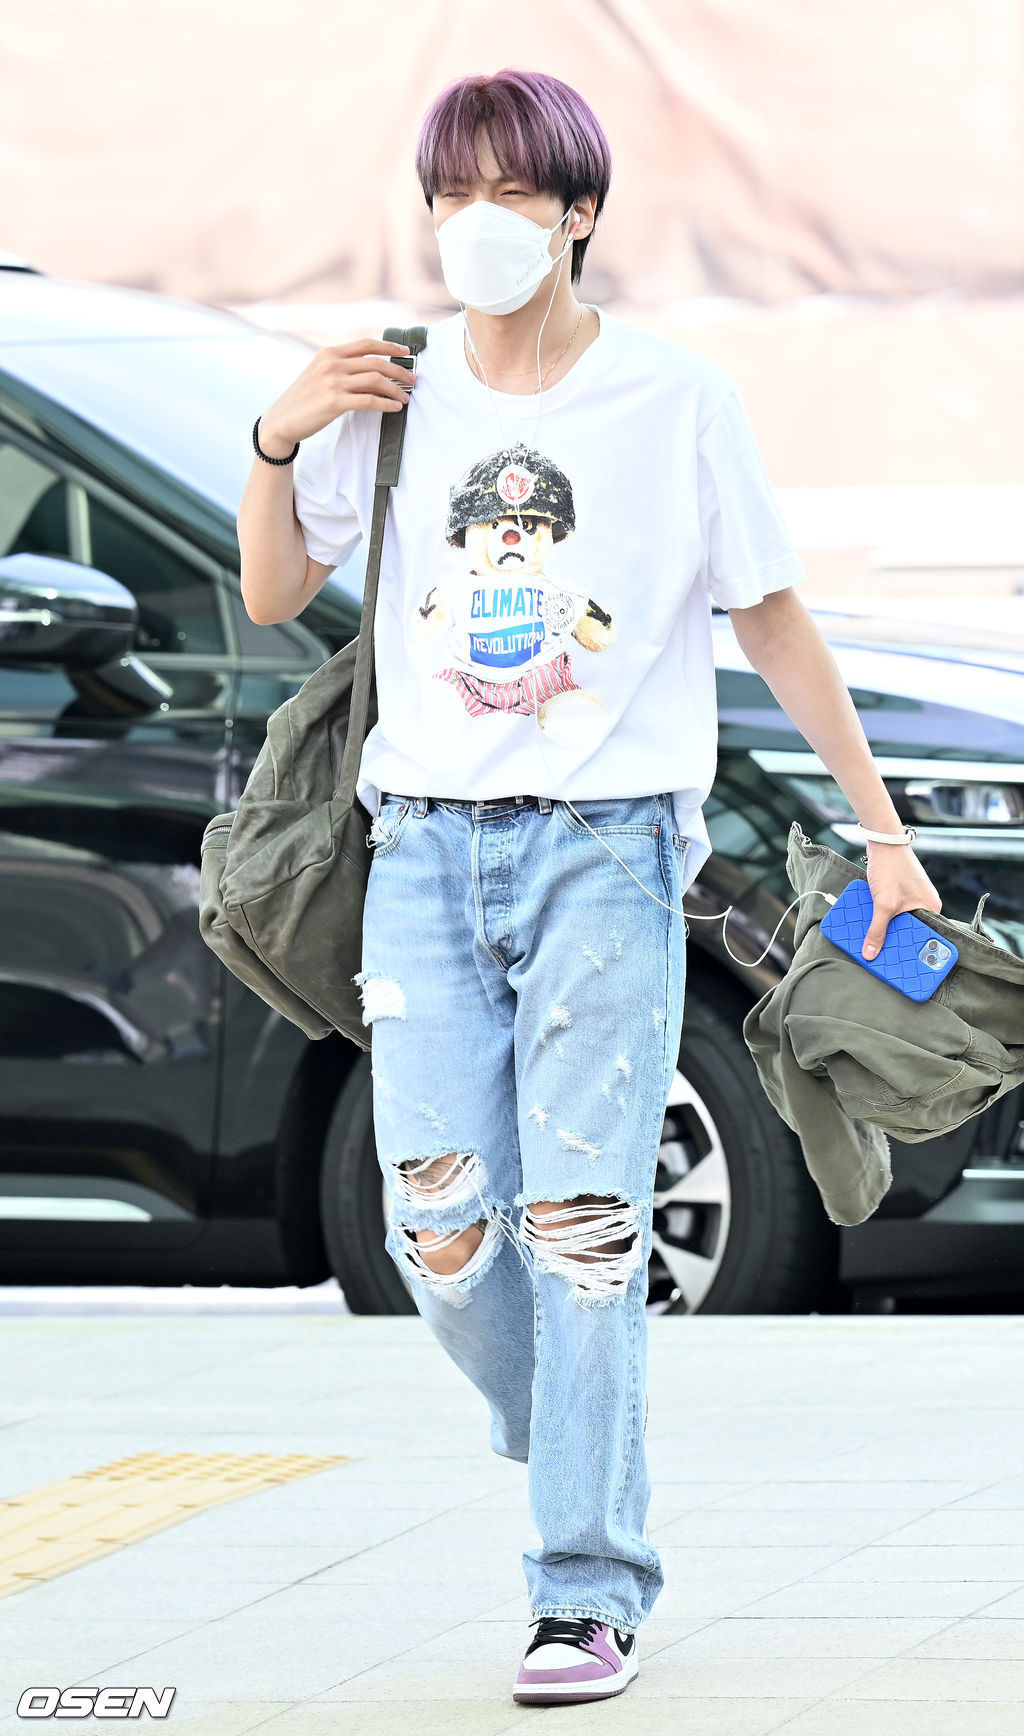 jungkook airport fashion, Tumblr